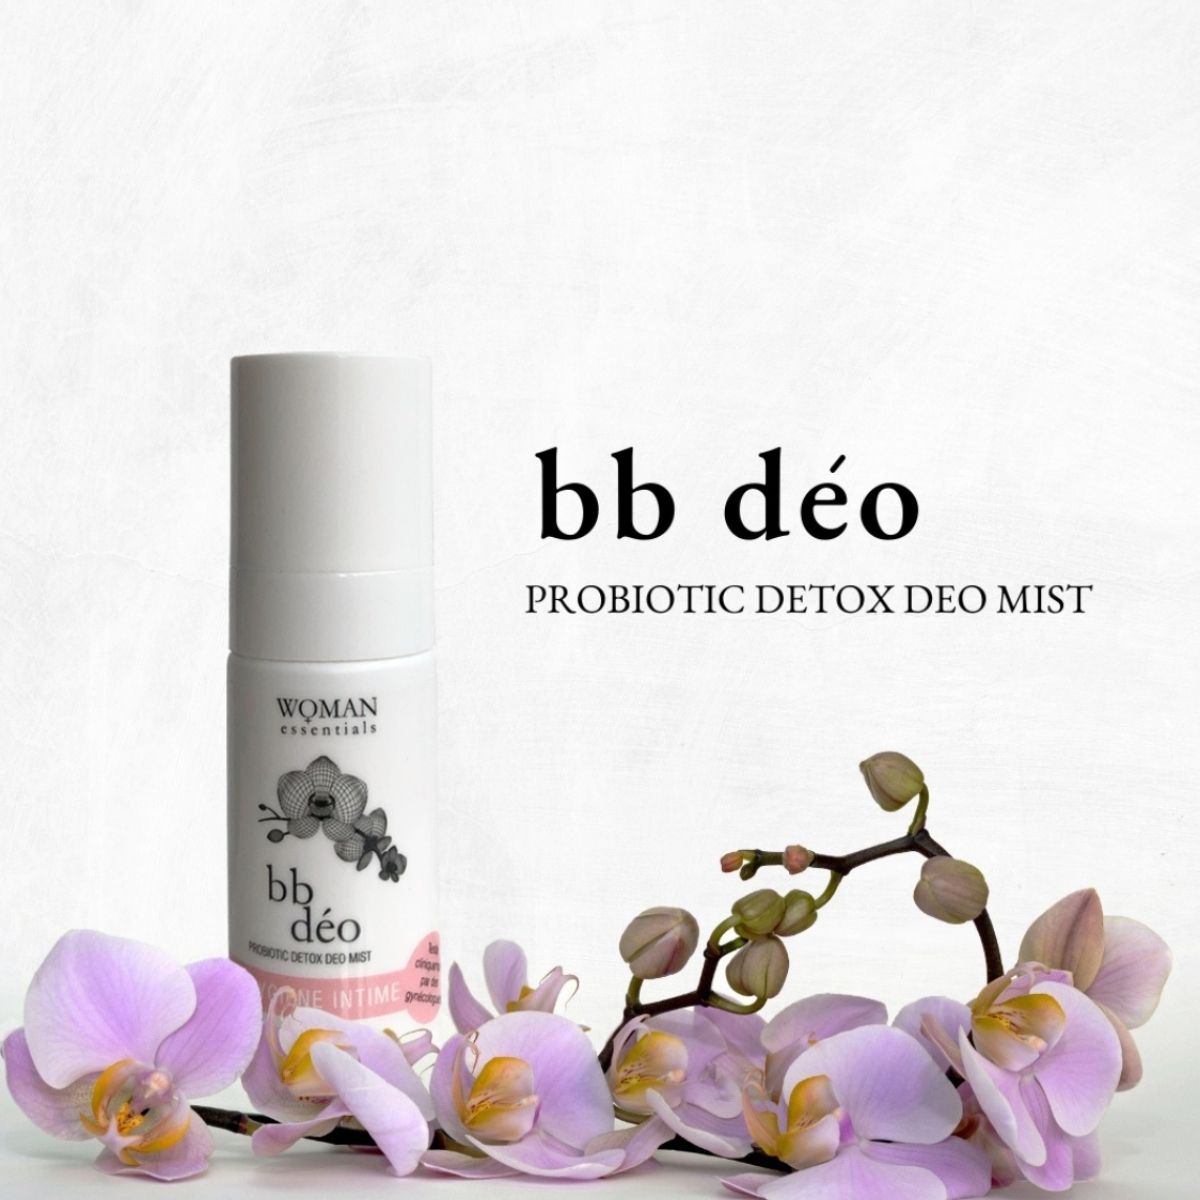 BB deo woman essentials probiotic detox mist